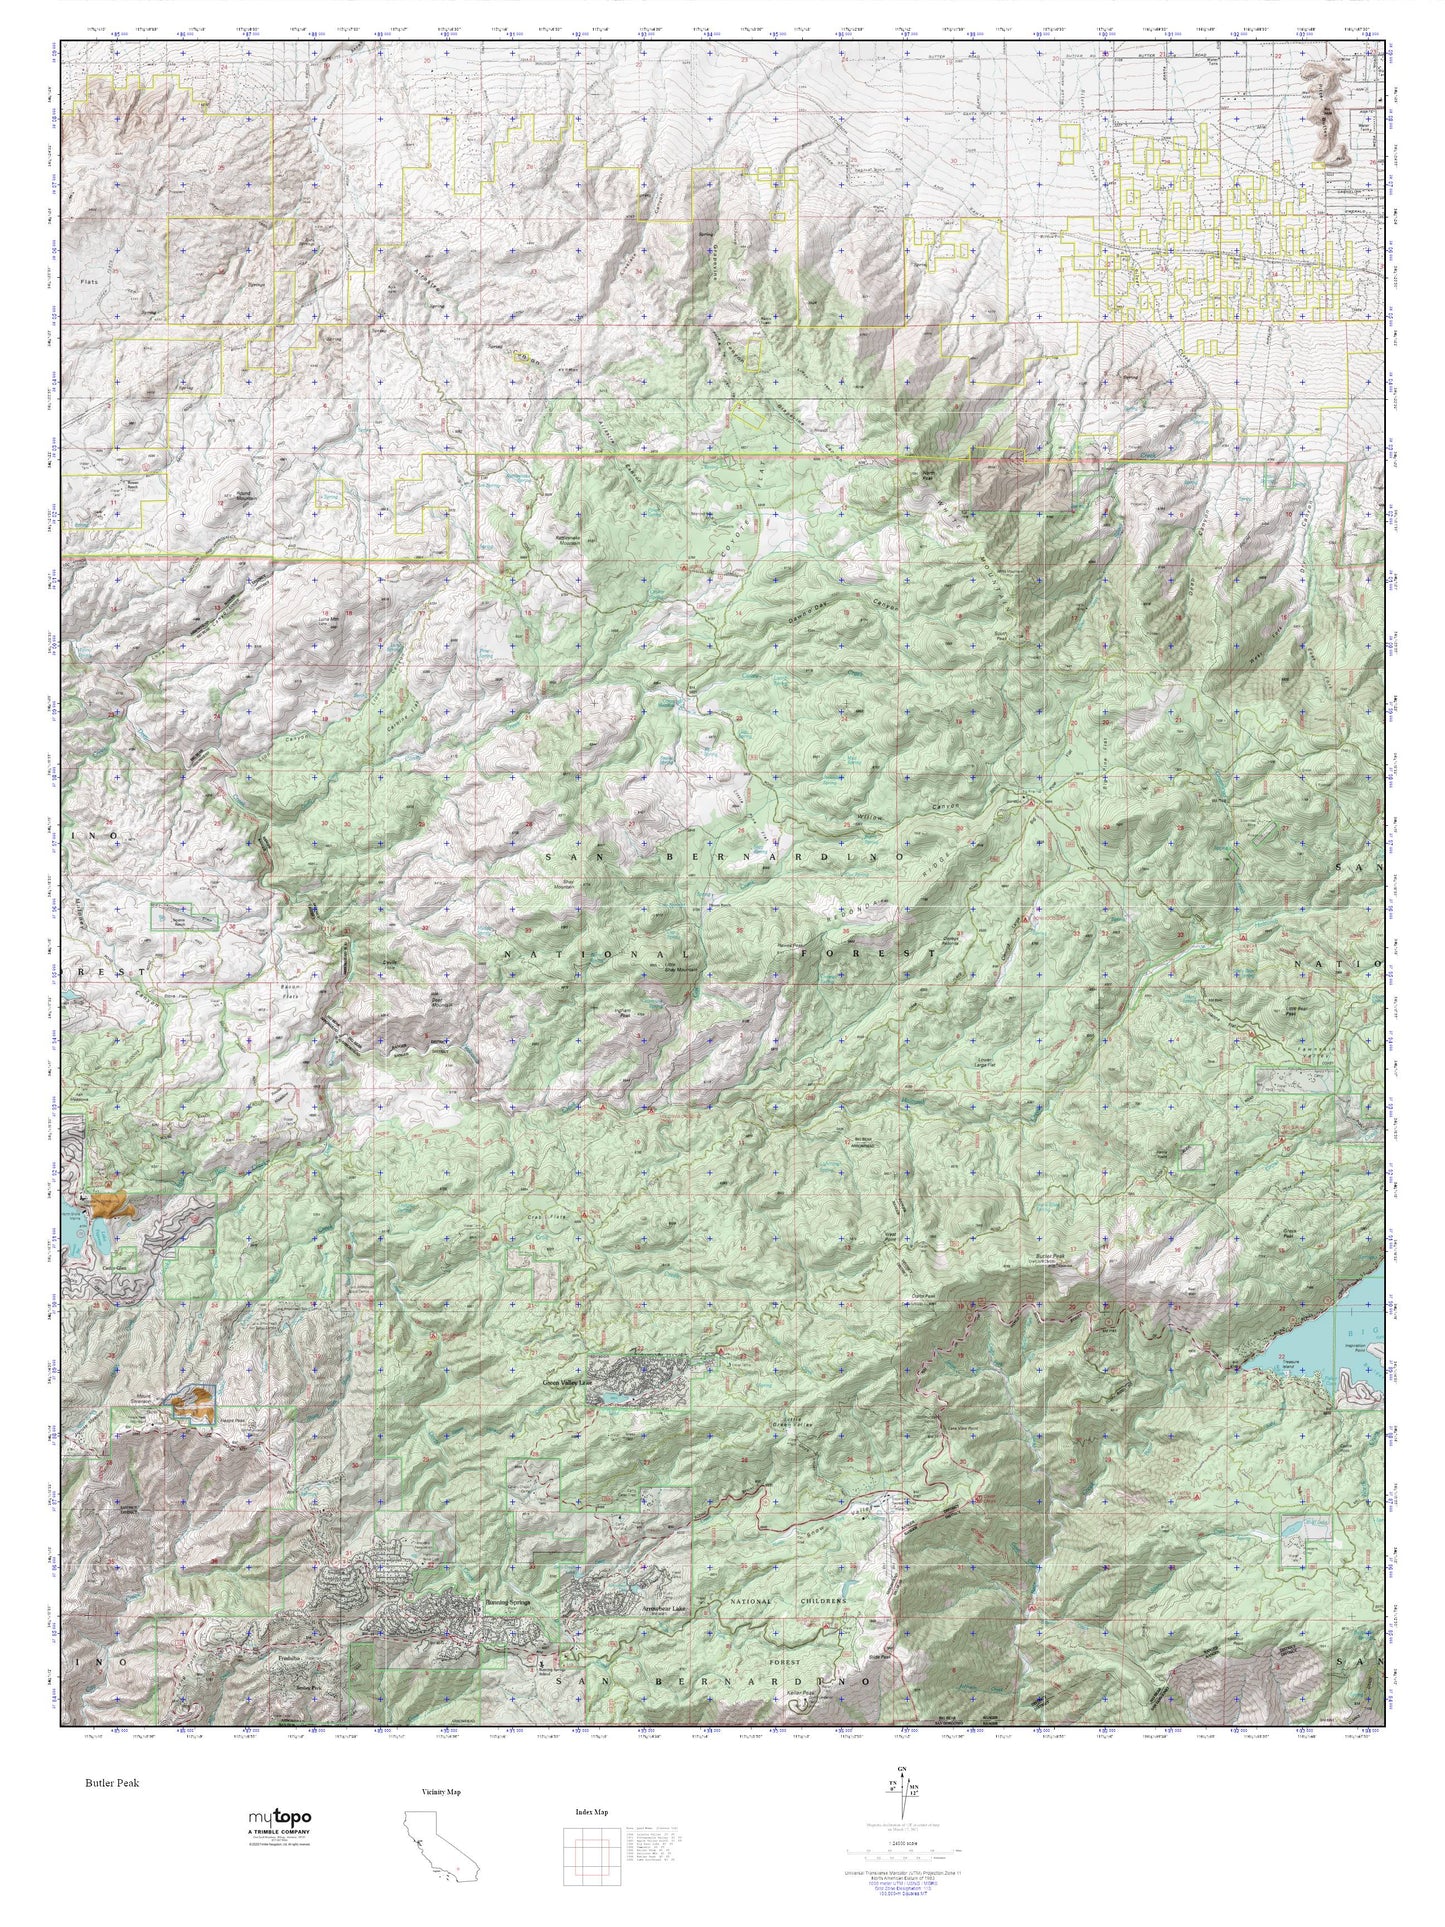 Butler Peak MyTopo Explorer Series Map Image